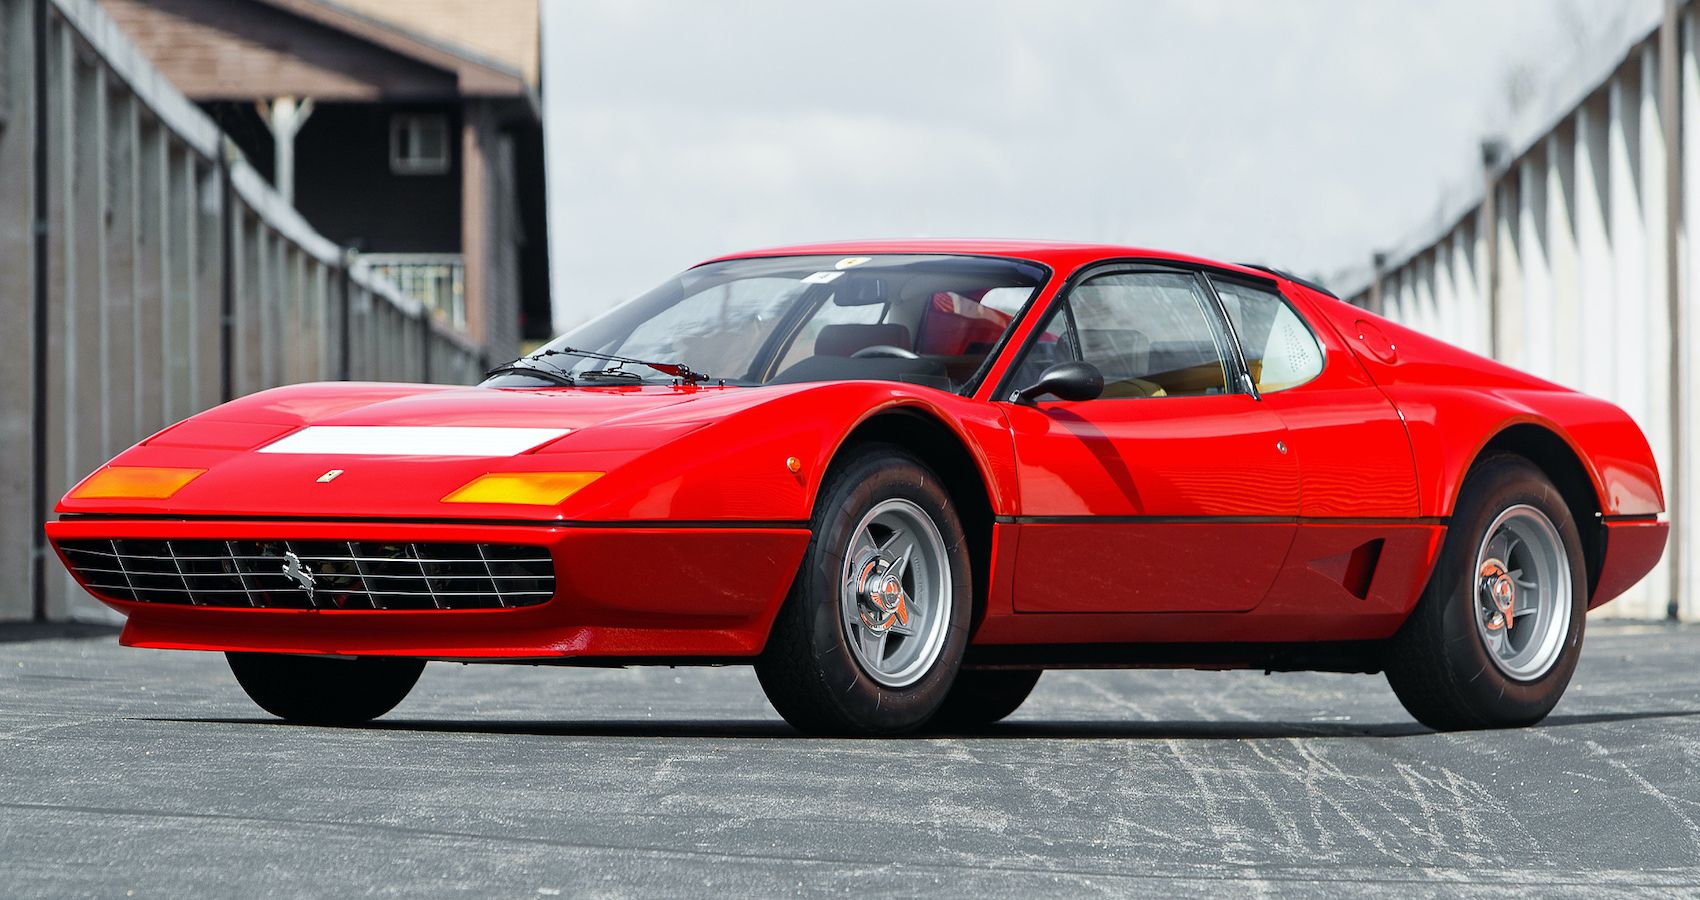 Why We Love The 1976 Ferrari 512 BB